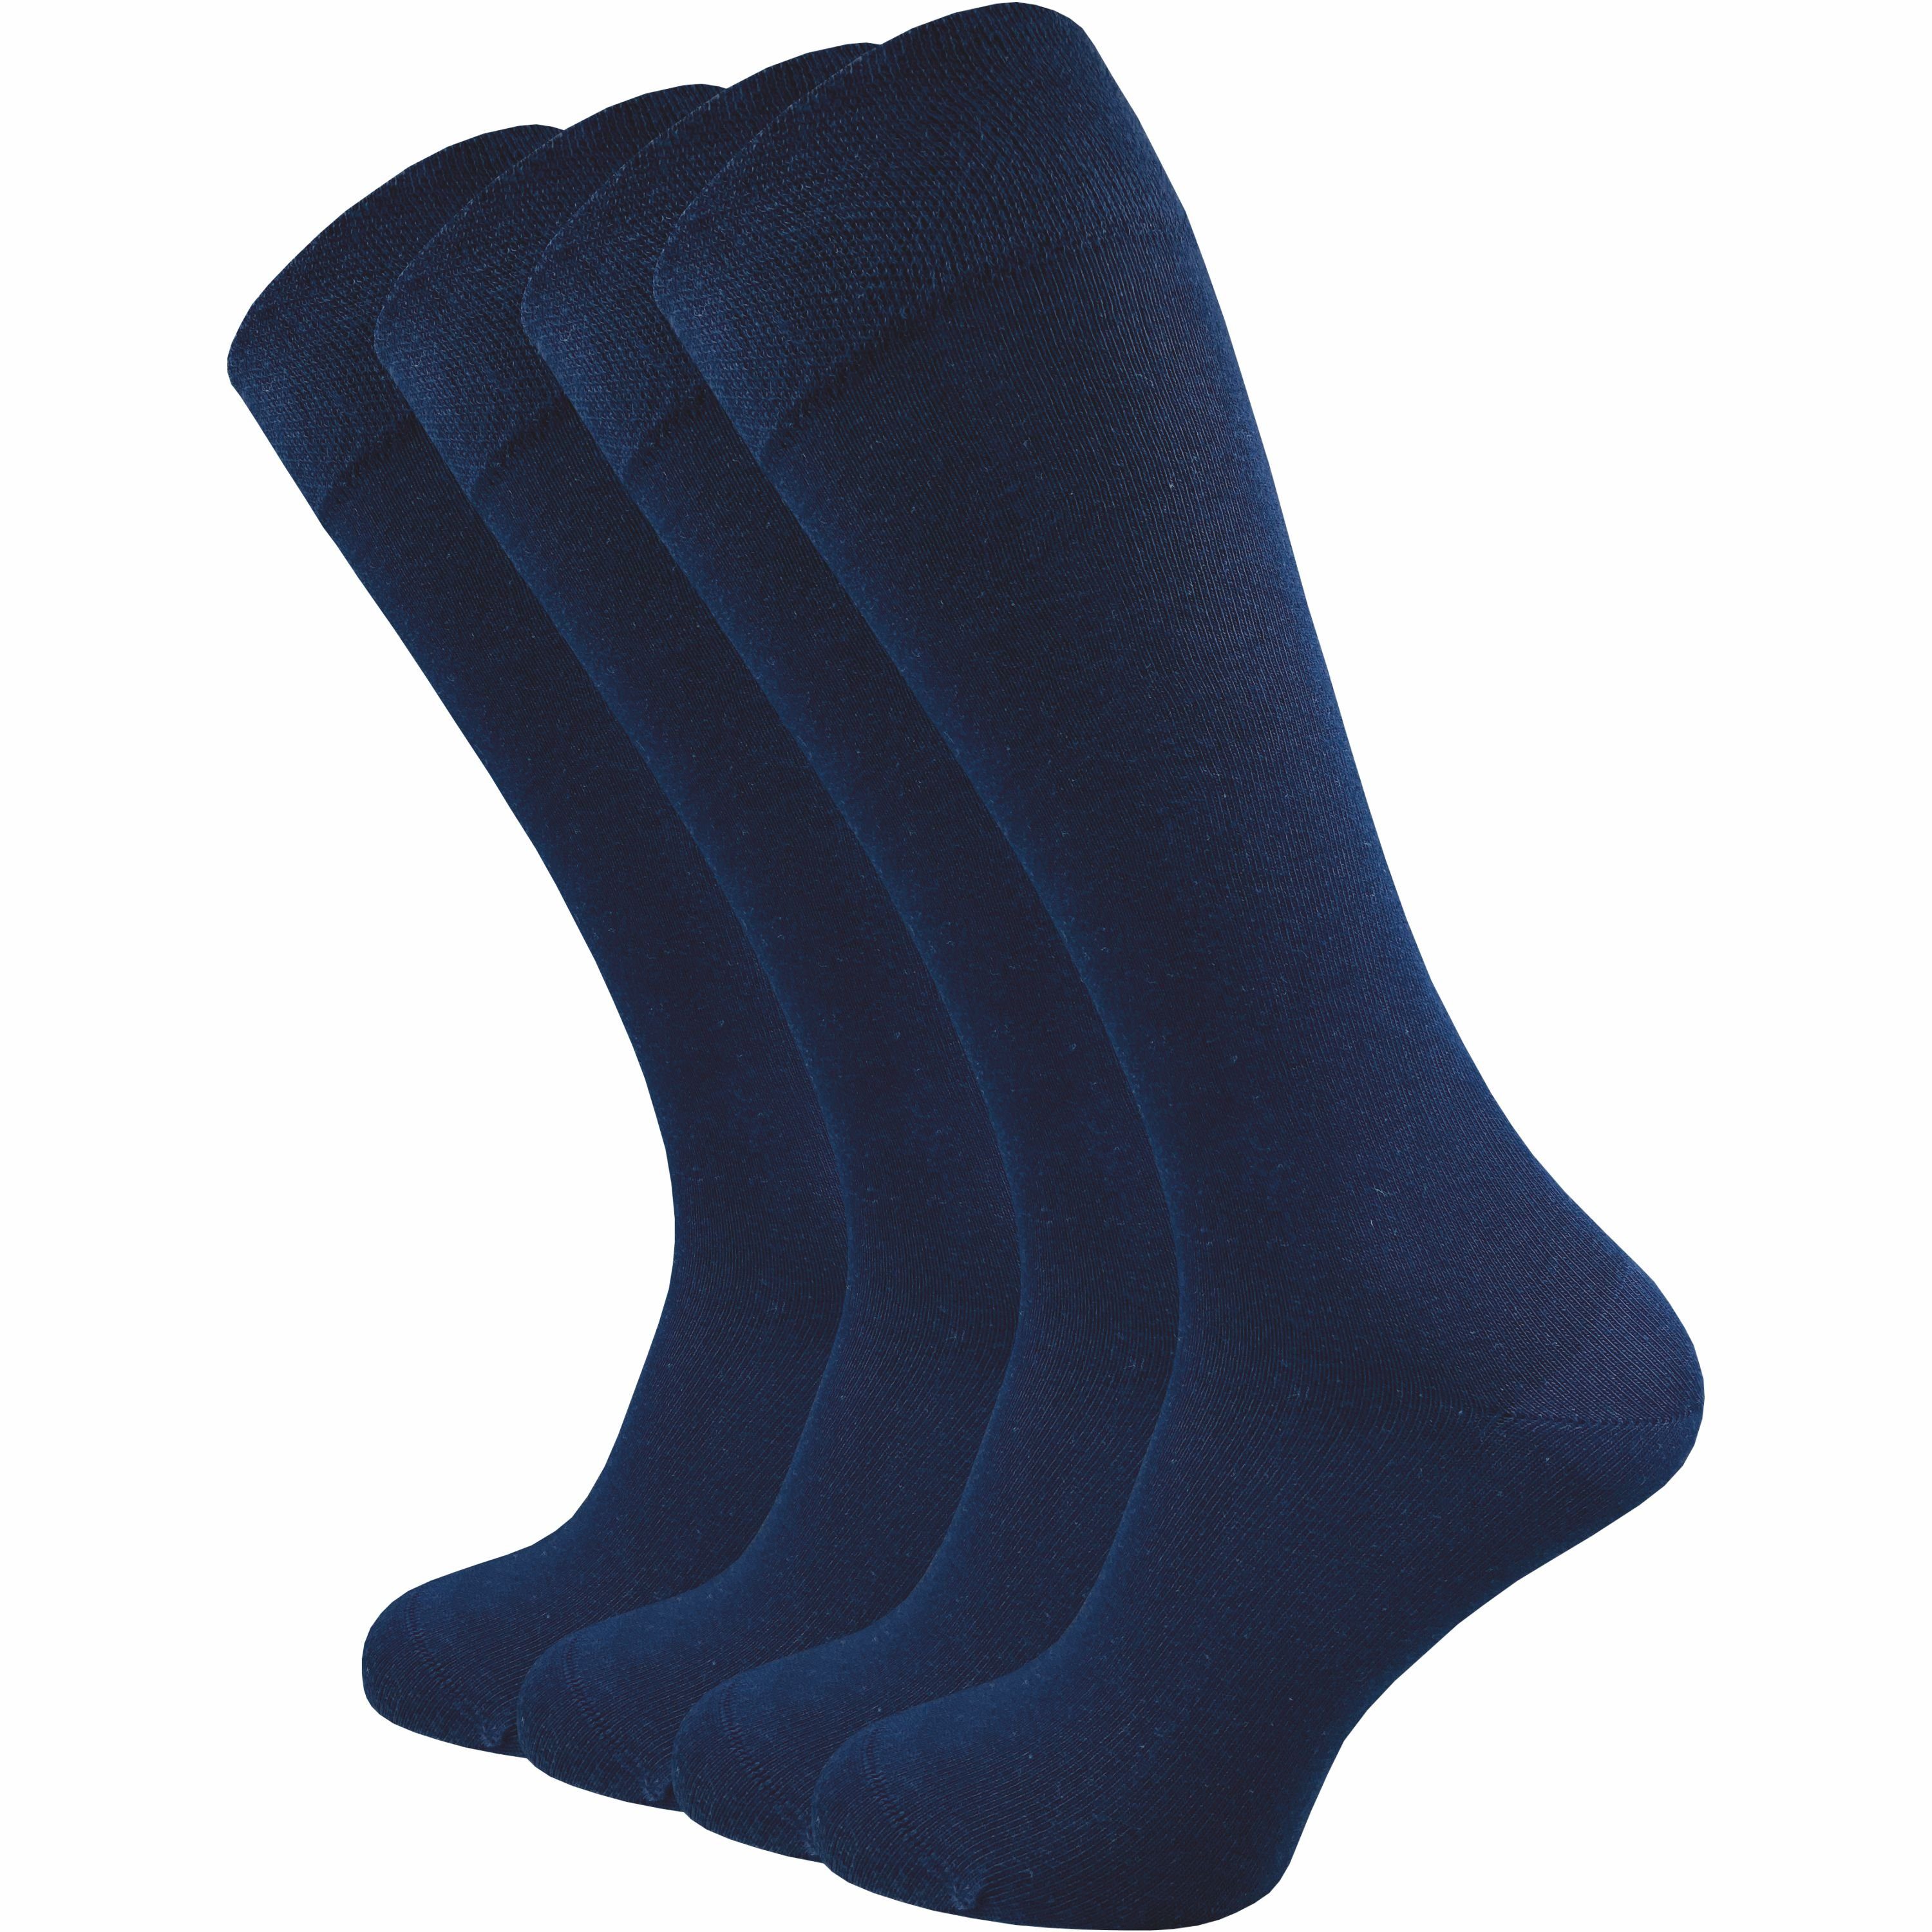 GAWILO Kniestrümpfe für Damen & Herren aus hochwertiger Baumwolle mit Komfortbund (4 Paar) Extra weicher Komfortbund, der nicht verrutscht ohne einzuschneiden blau